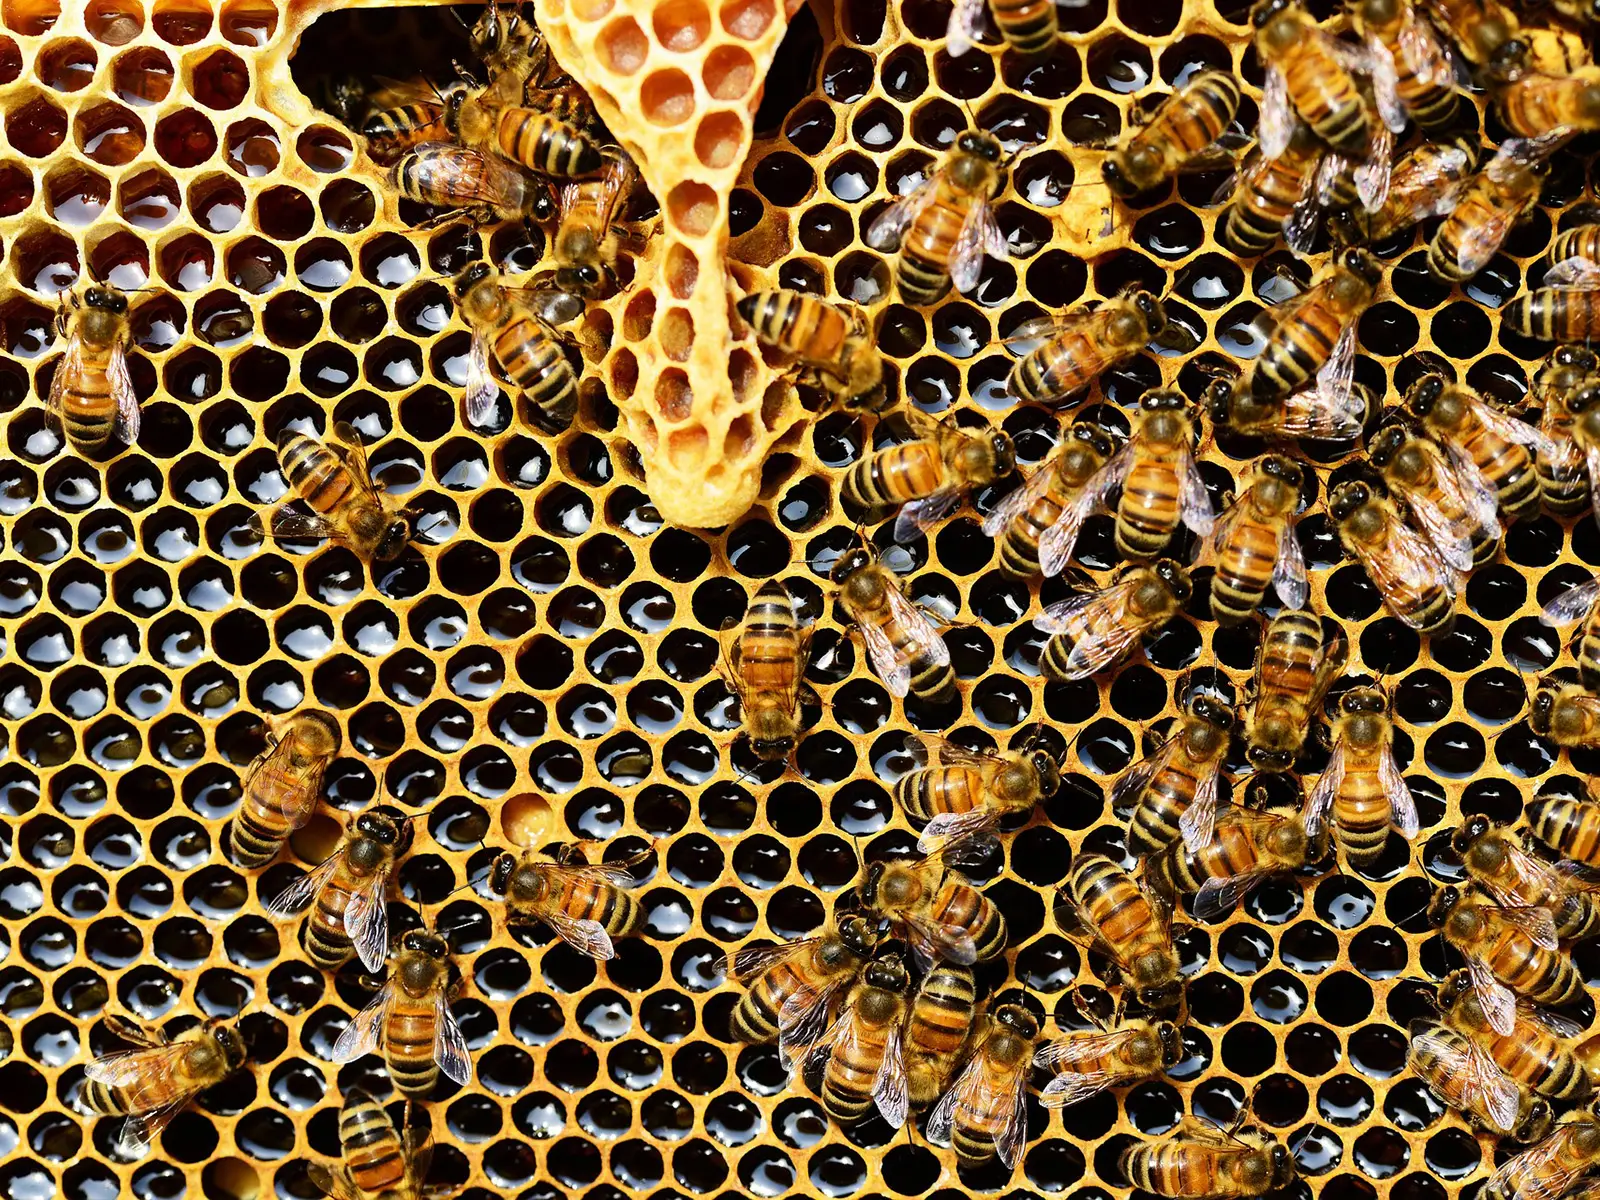 Il 75% del miele al mondo è contaminato da pesticidi